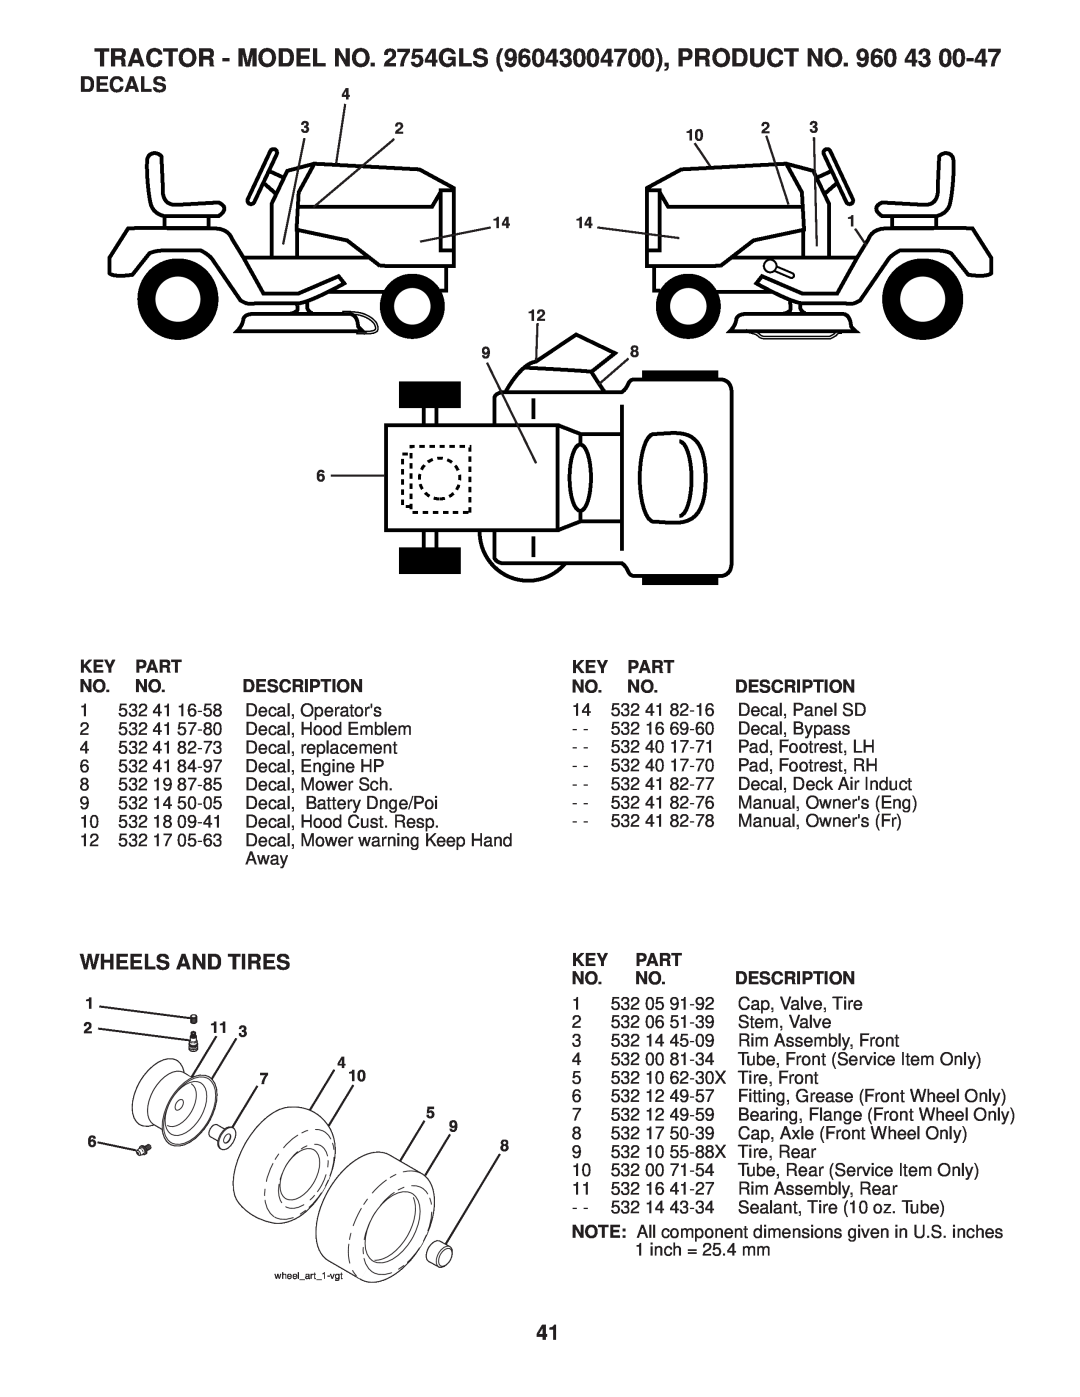 Husqvarna 2754 GLS Decals, Wheels And Tires, TRACTOR - MODEL NO. 2754GLS 96043004700, PRODUCT NO. 960, Part, Description 